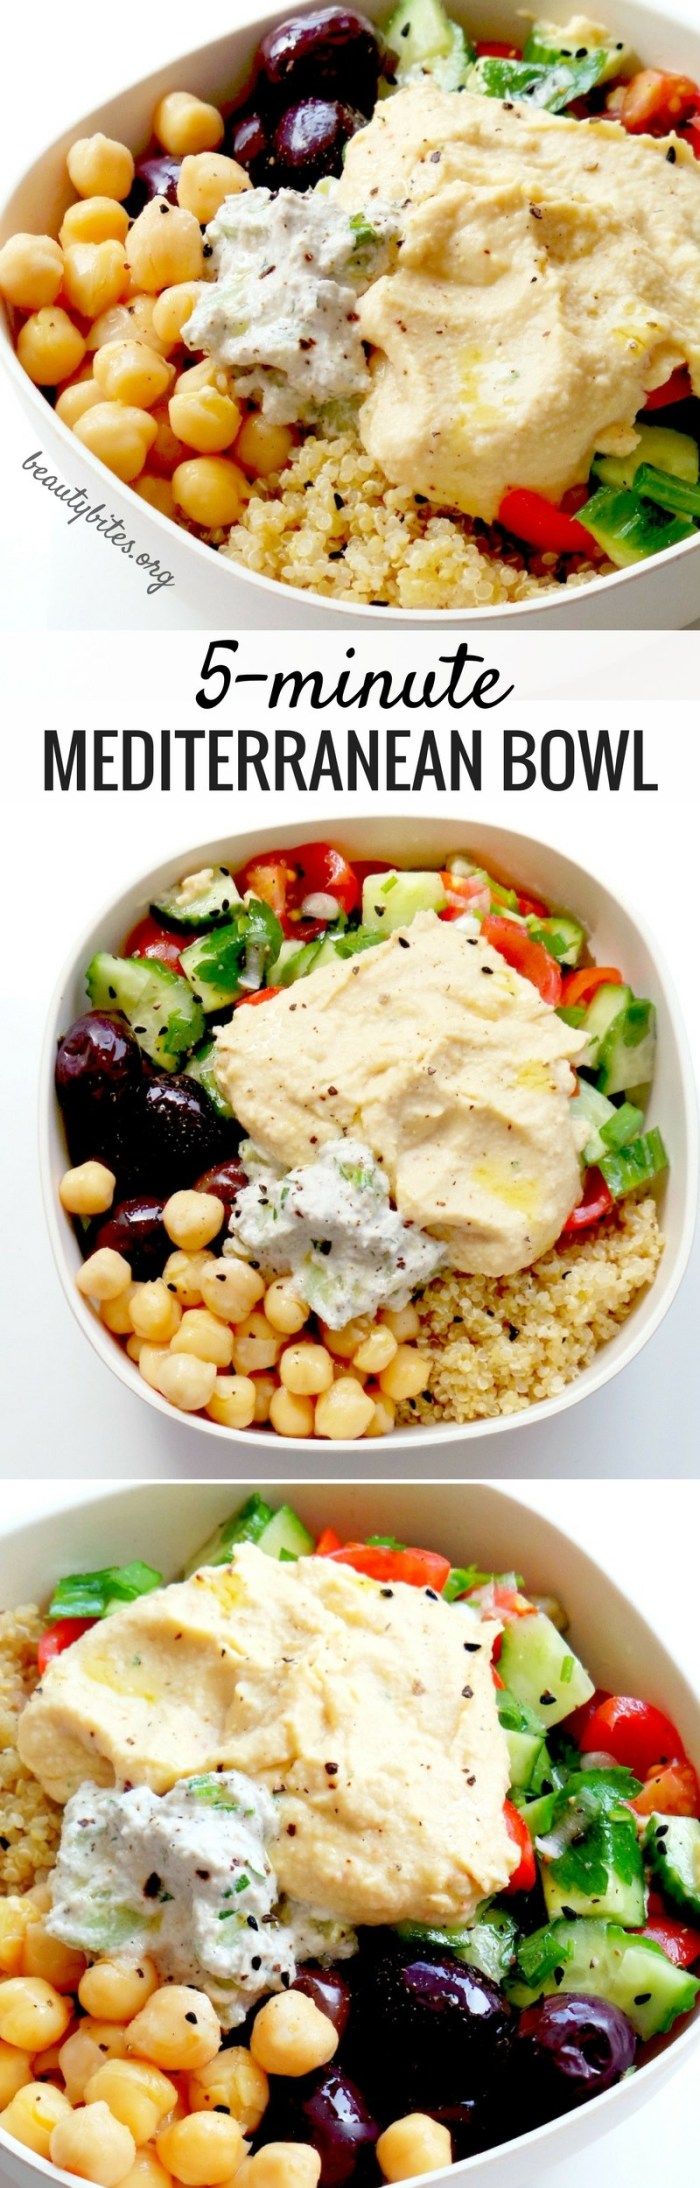 abendessen ideen warm, ein bildrezept, so wird die mediterrane bowl gemacht